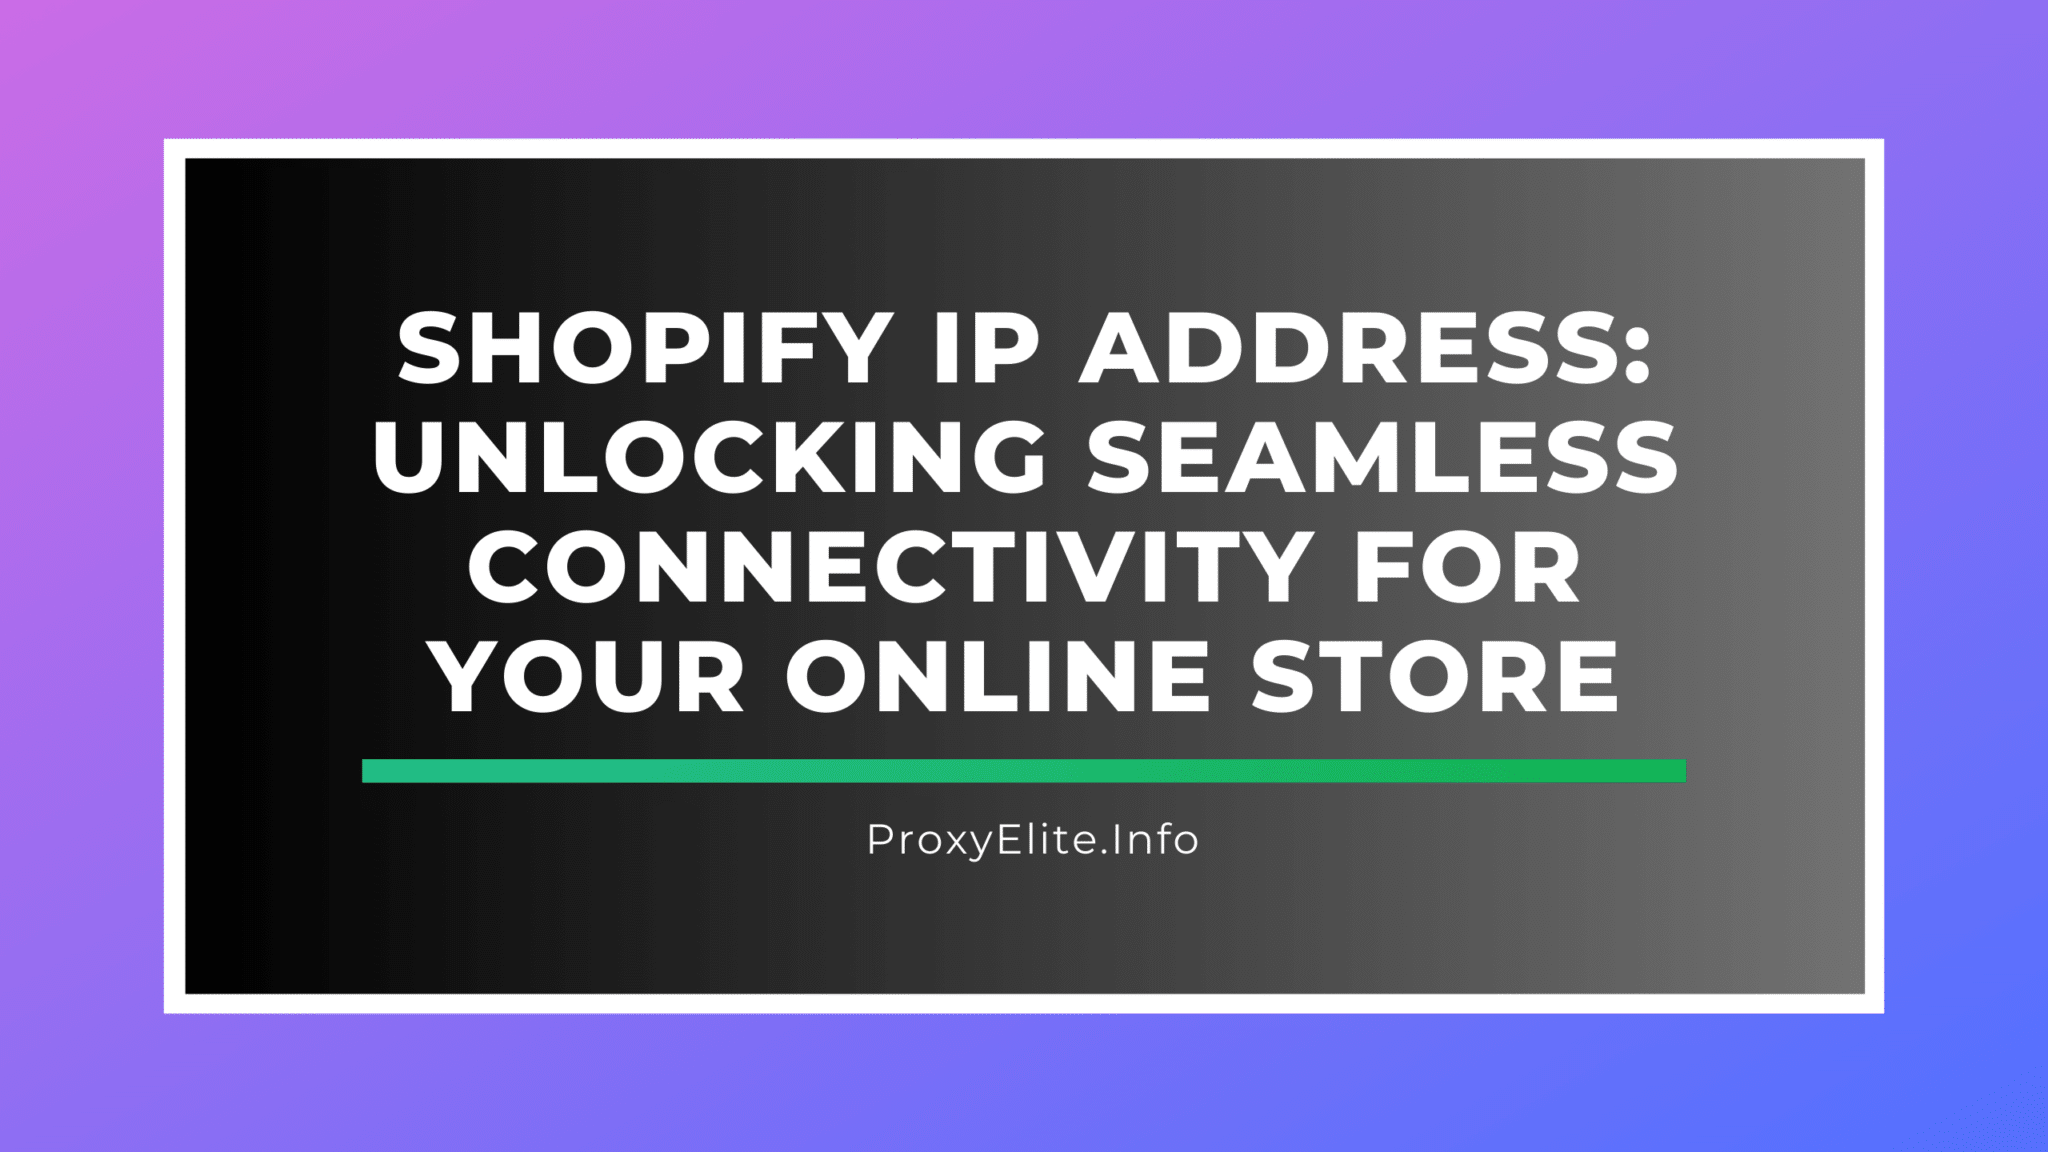 Địa chỉ IP Shopify: Mở khóa khả năng kết nối liền mạch cho cửa hàng trực tuyến của bạn